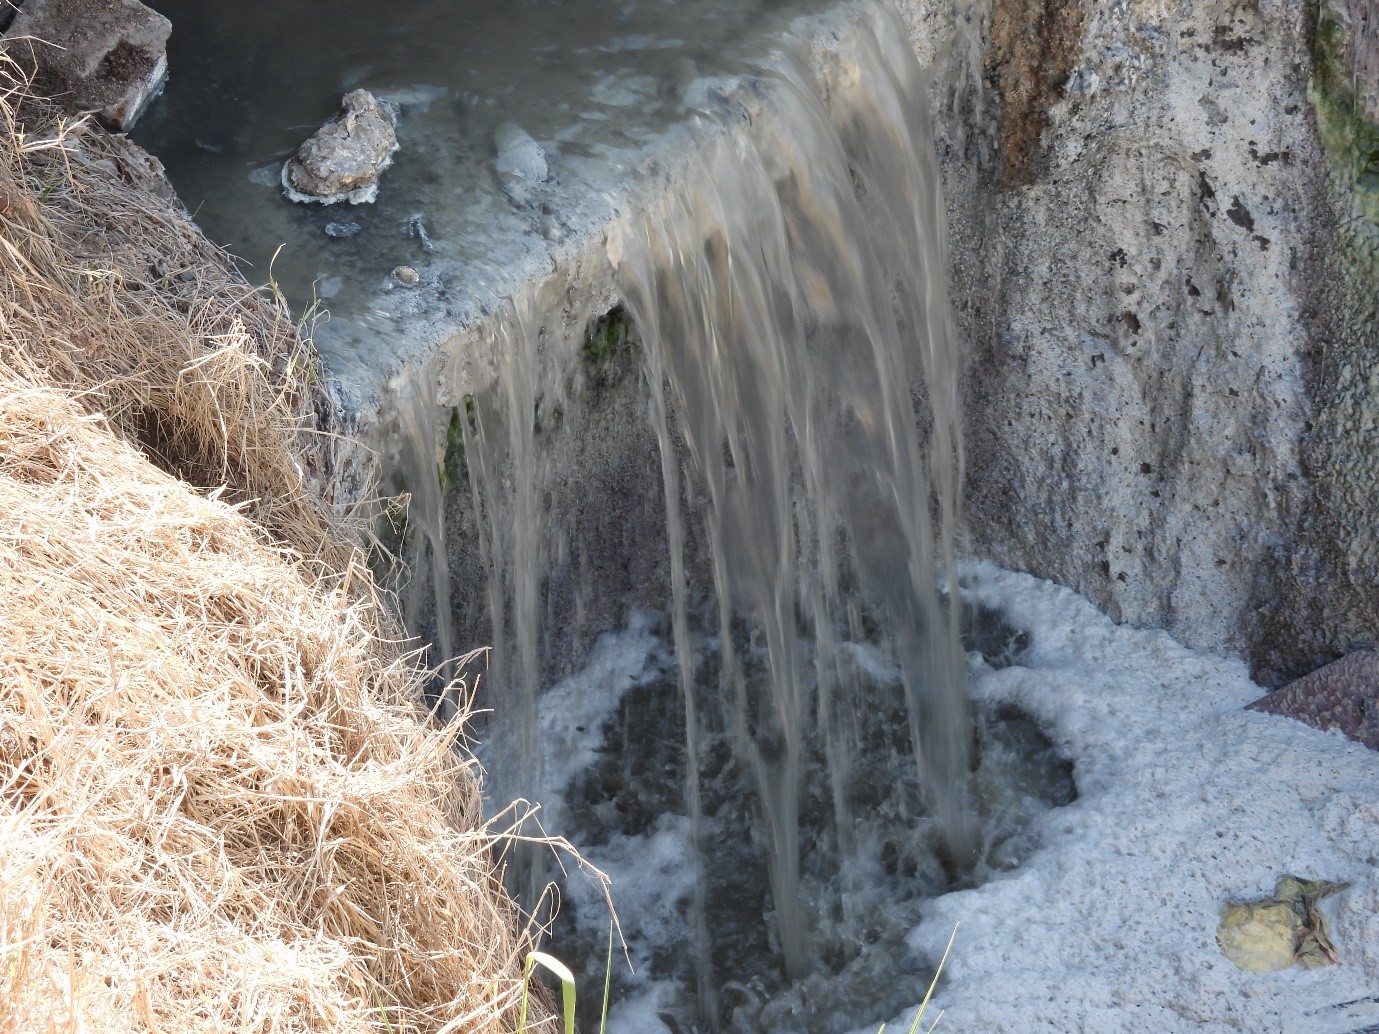 Uno de los vuelcos en el río Reconquista. Los estudios detectaron acumulación de espuma blanca, olor nauseabundo y temperatura elevada. - Foto: Fiscalía Federal de Moreno.